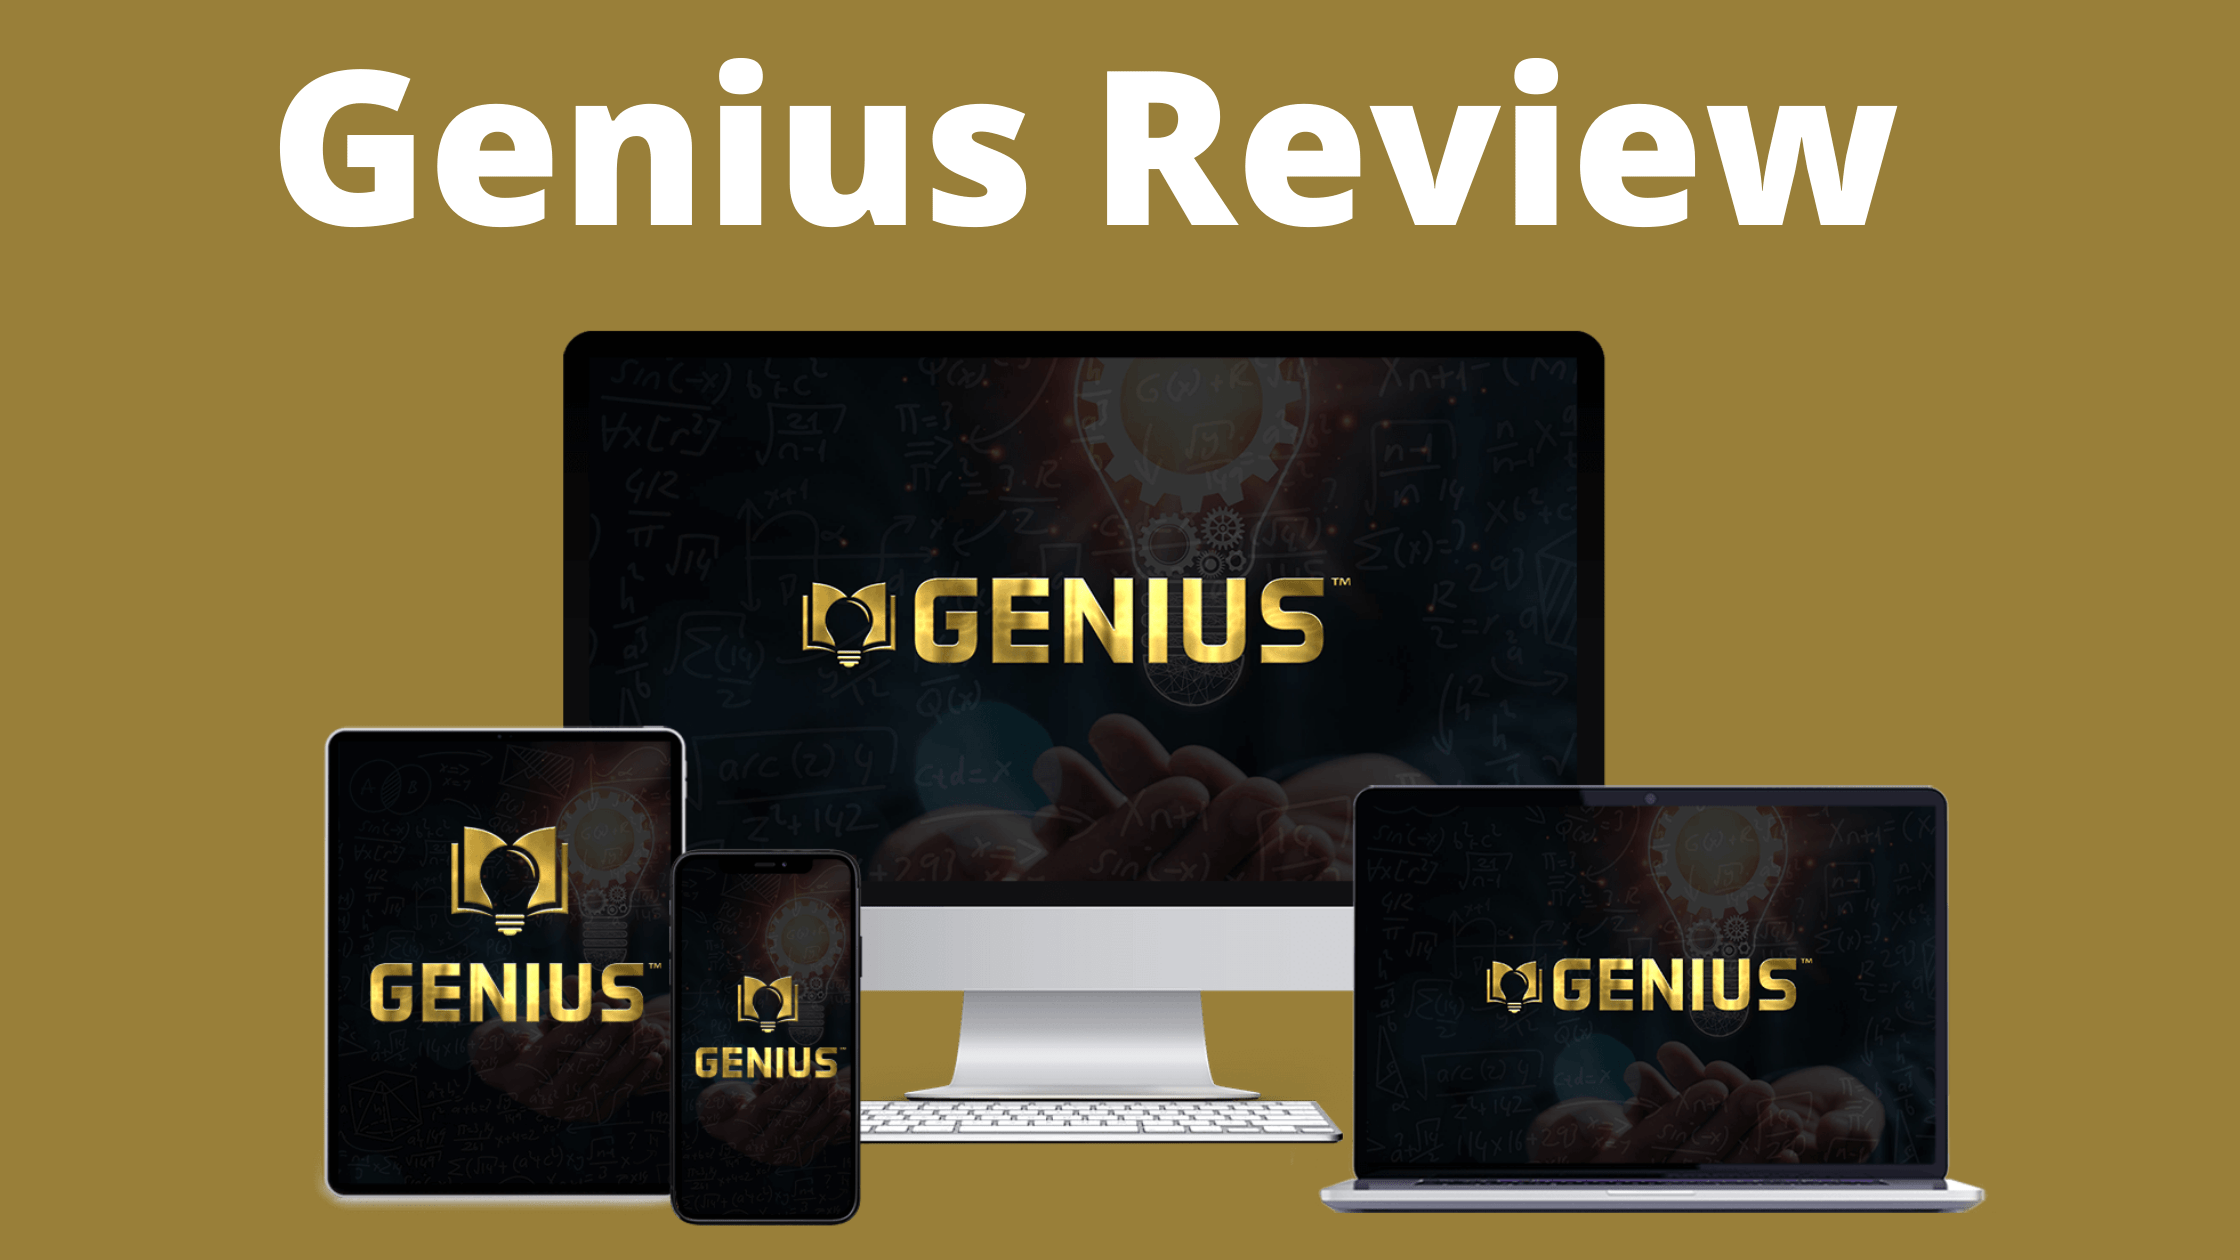 Genius Review